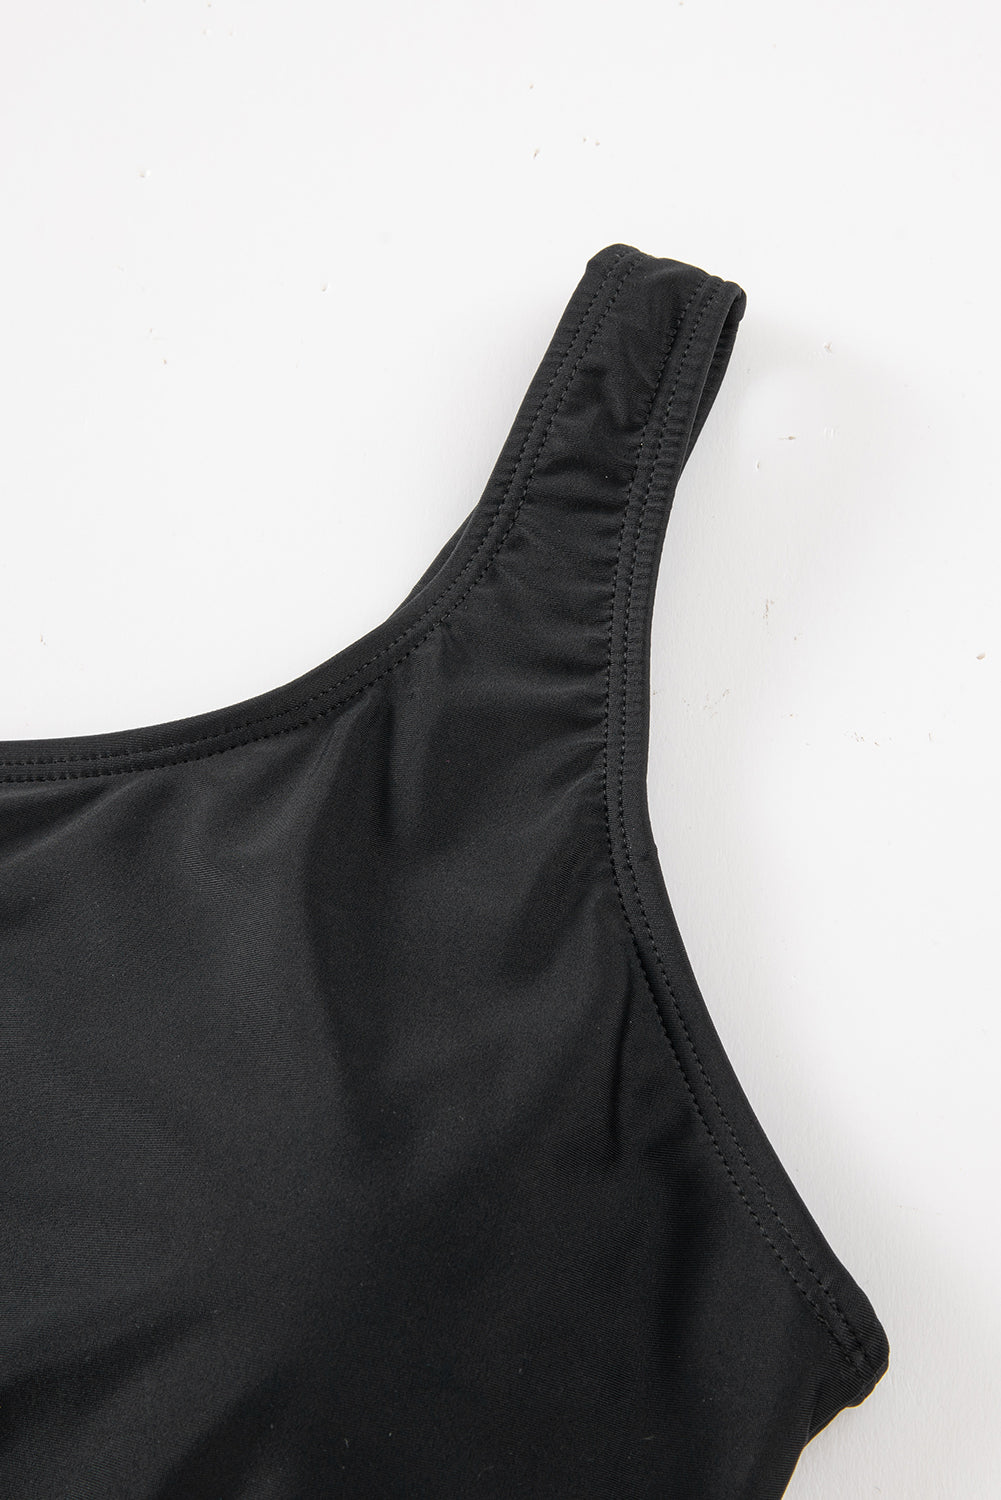 Crni jednodijelni kupaći kostim s mrežicom na jednom ramenu